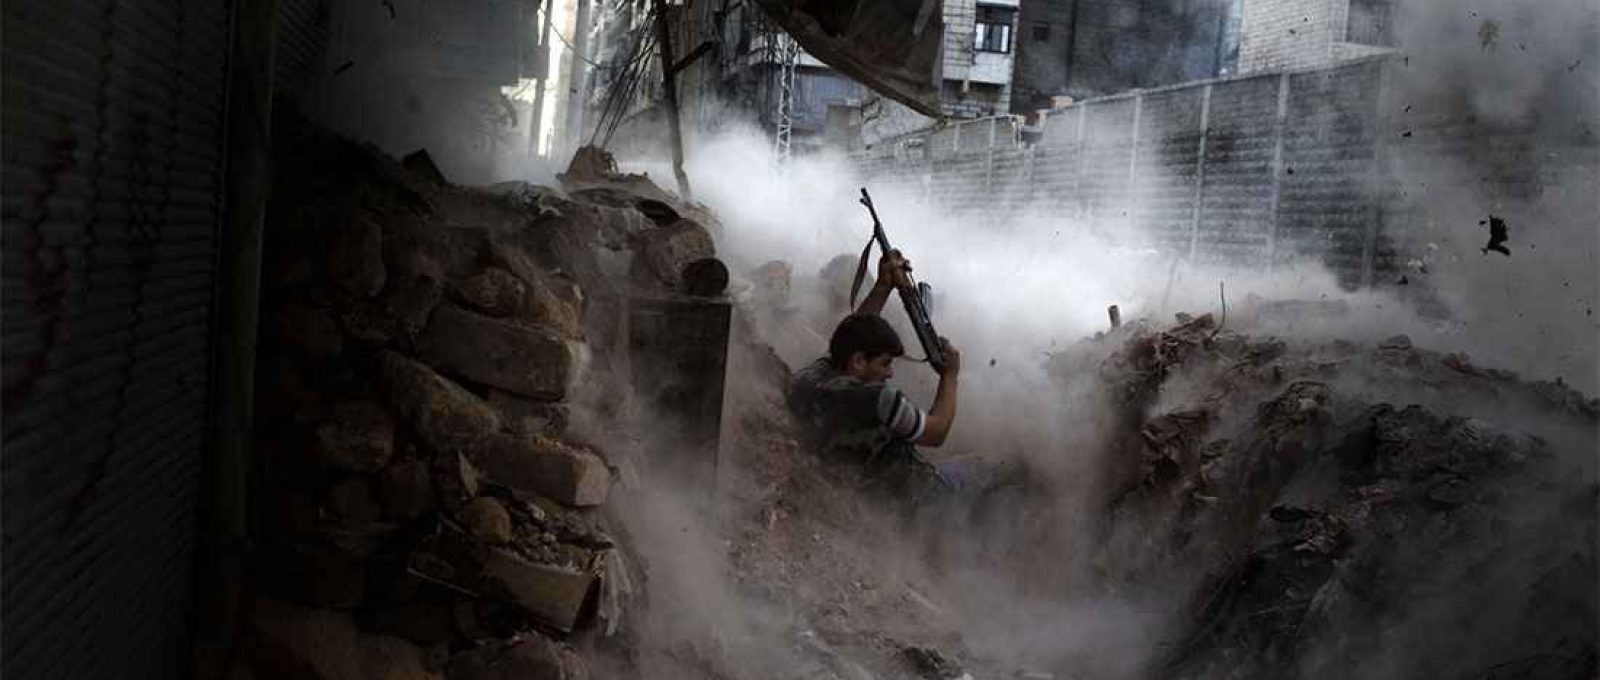 Rebeldes em combate em Aleppo, Síria, 4 de agosto de 2012 (Niklas Meltio/Corbis).